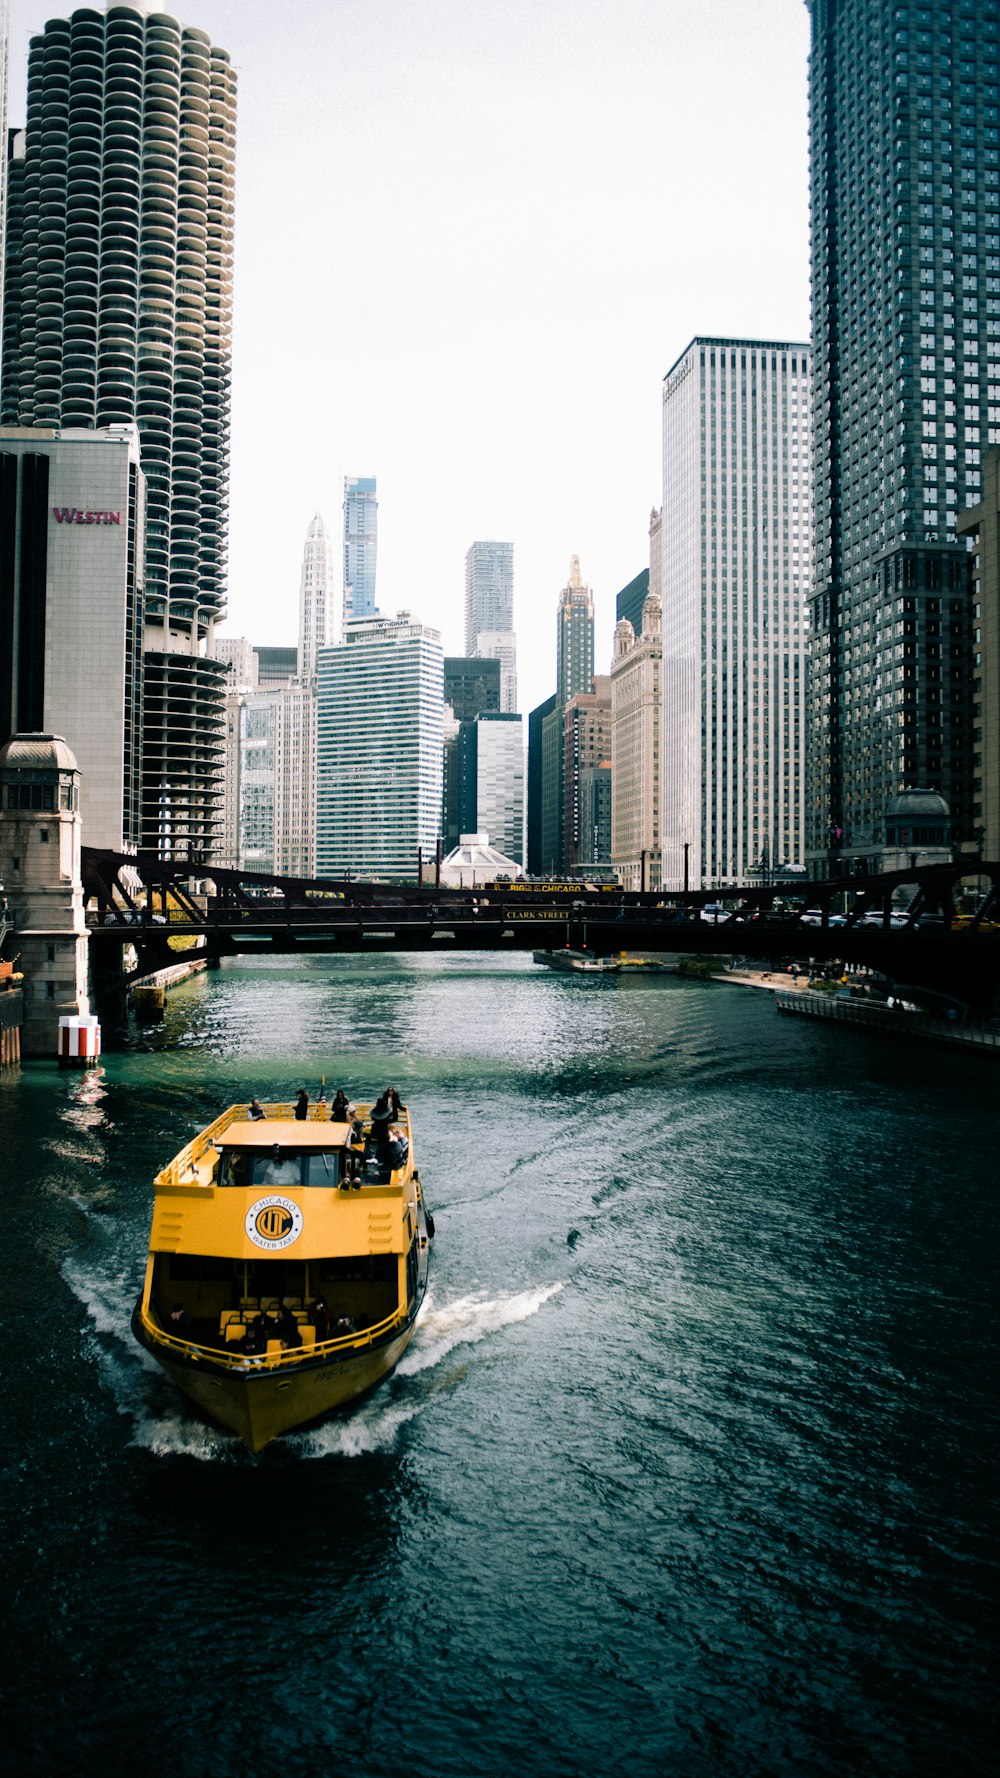 barco amarelo e preto na água perto de edifícios altos durante o dia